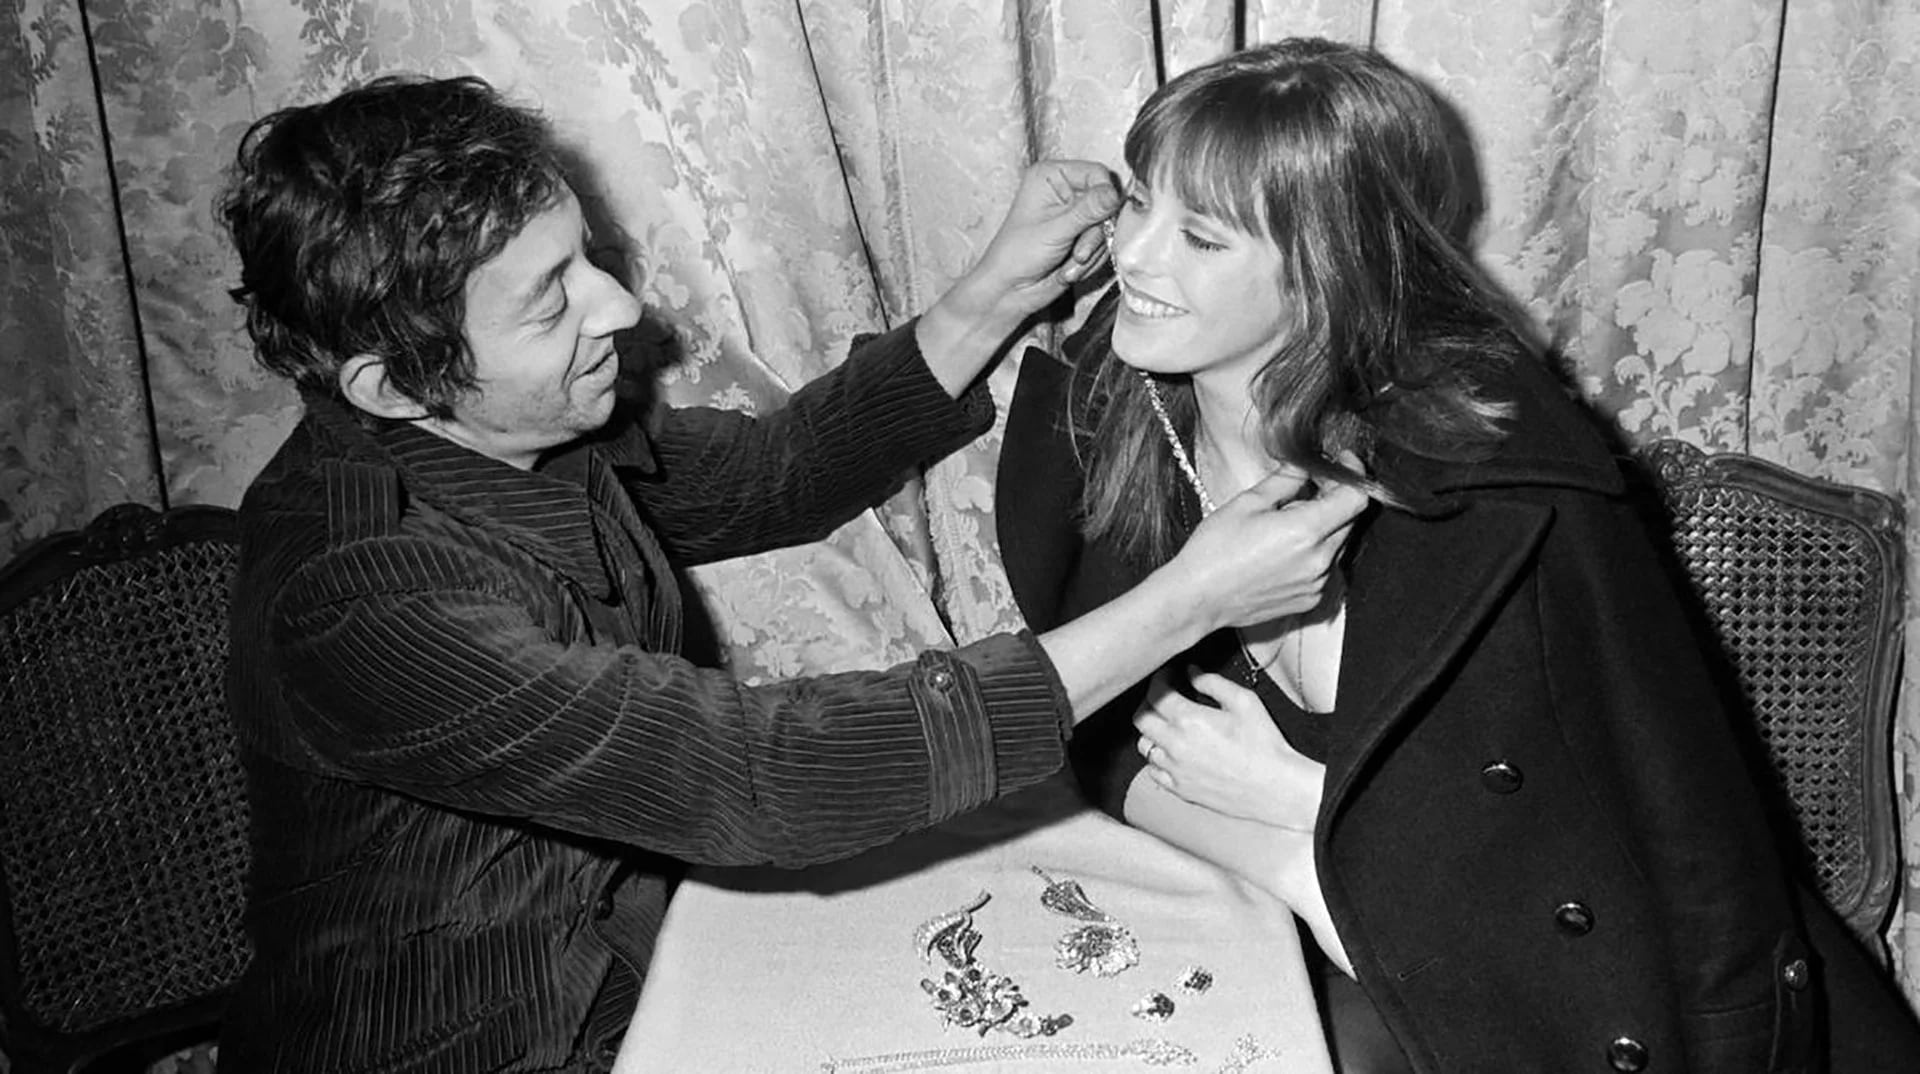 Jane Birkin tendría una apasionante relación con Serge Gainsbourg, interpretando junto a él la pieza que la llevaría a la fama y la censuraría en varios países: "Je t'aime... moi non plus"